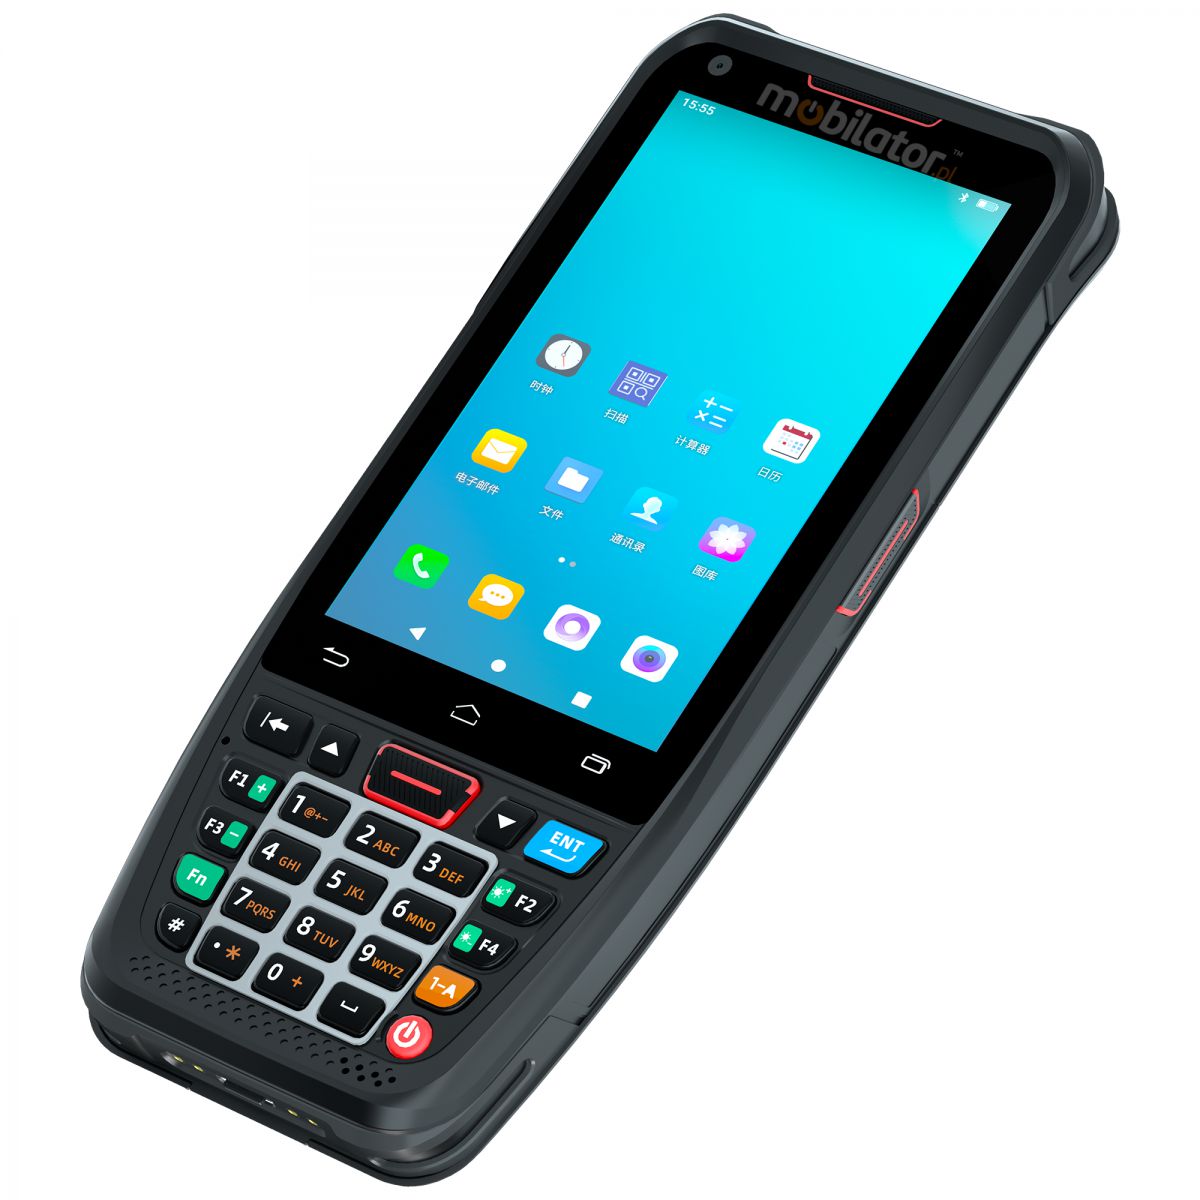 MobiPad L400N v.6 - Przemysowy kolektor danych z ekranem 4 cali, systemem Android 10.0 oraz czytnikiem kodw 2D